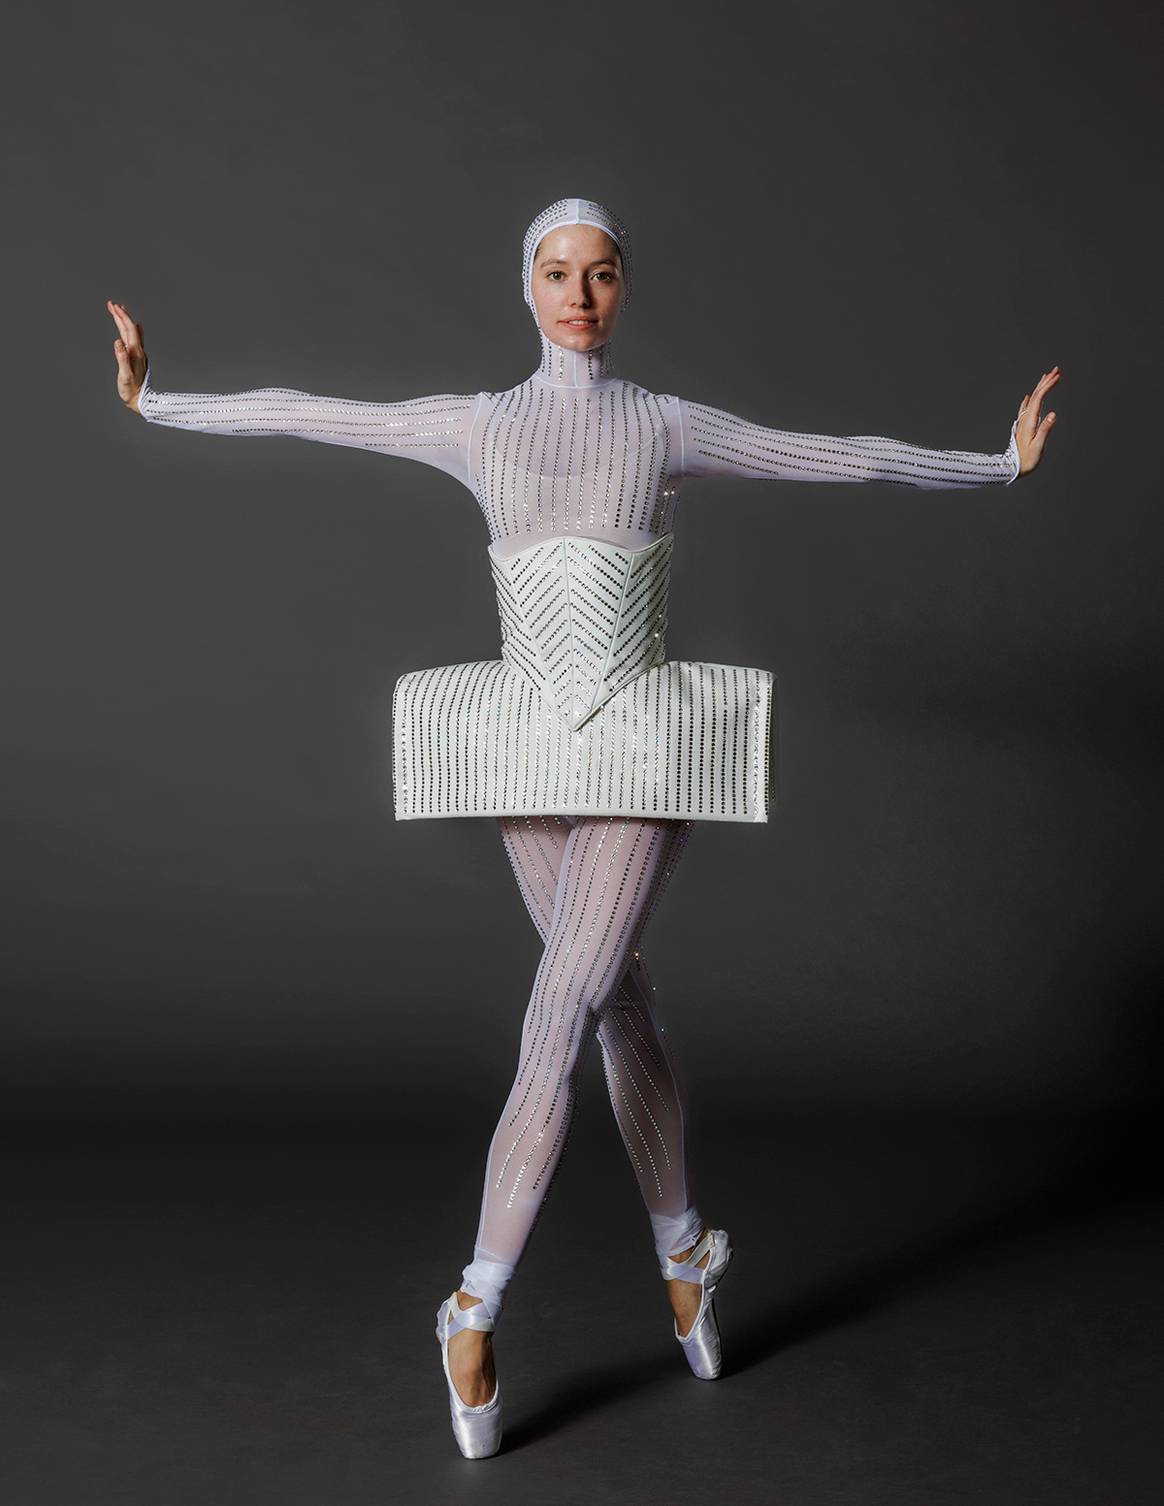 Photo Credits: Diseños de Palomo Spain para la 10ª edición de la Fall Fashion Gala del New York City Ballet. Palomo Spain, fotografía de cortesía.